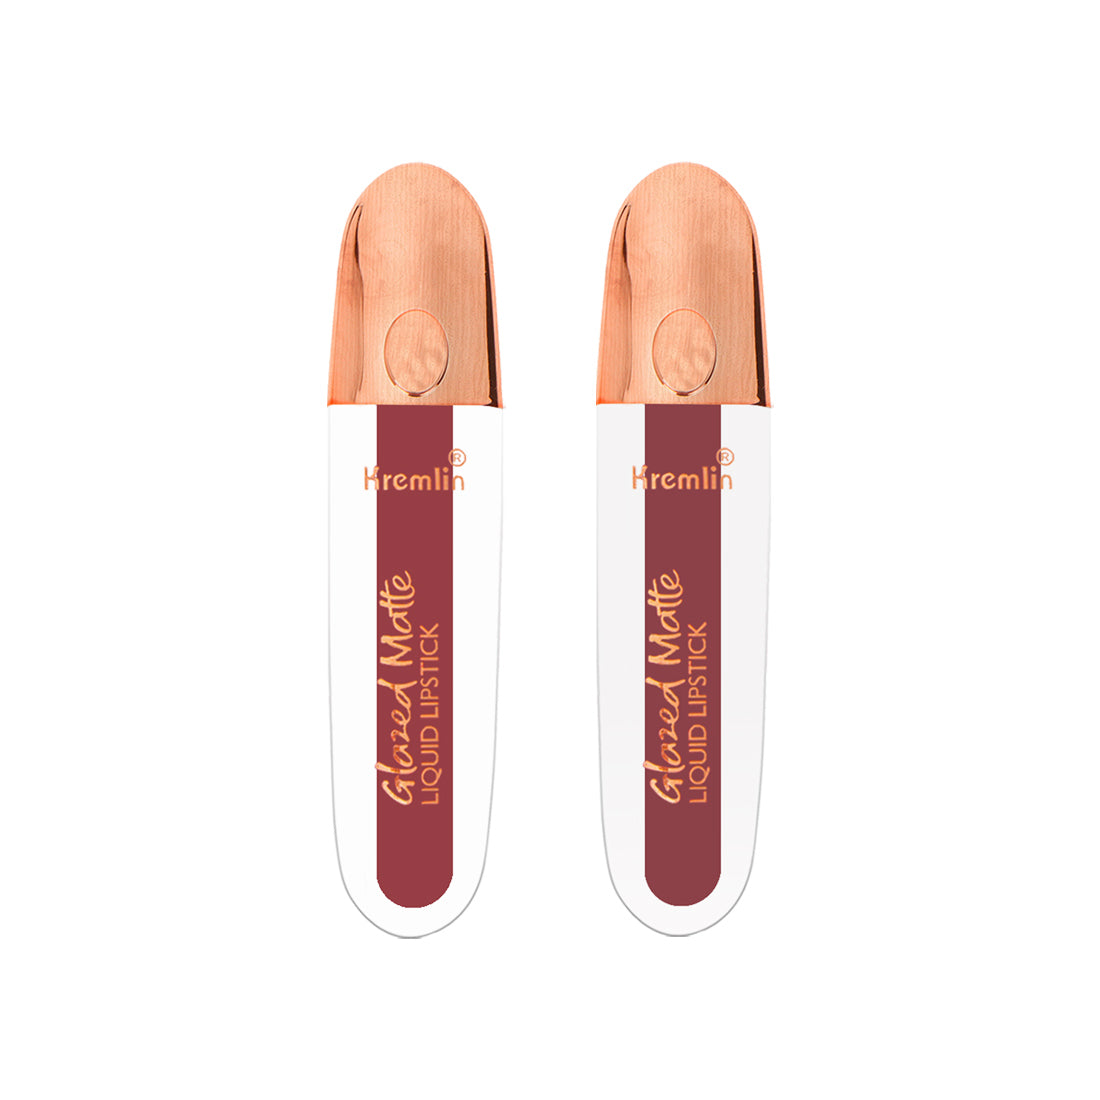 Kremlin Glazed Matte Liquid Lipstick Lips Pack of 2 (Chilling Lips, Virgin)